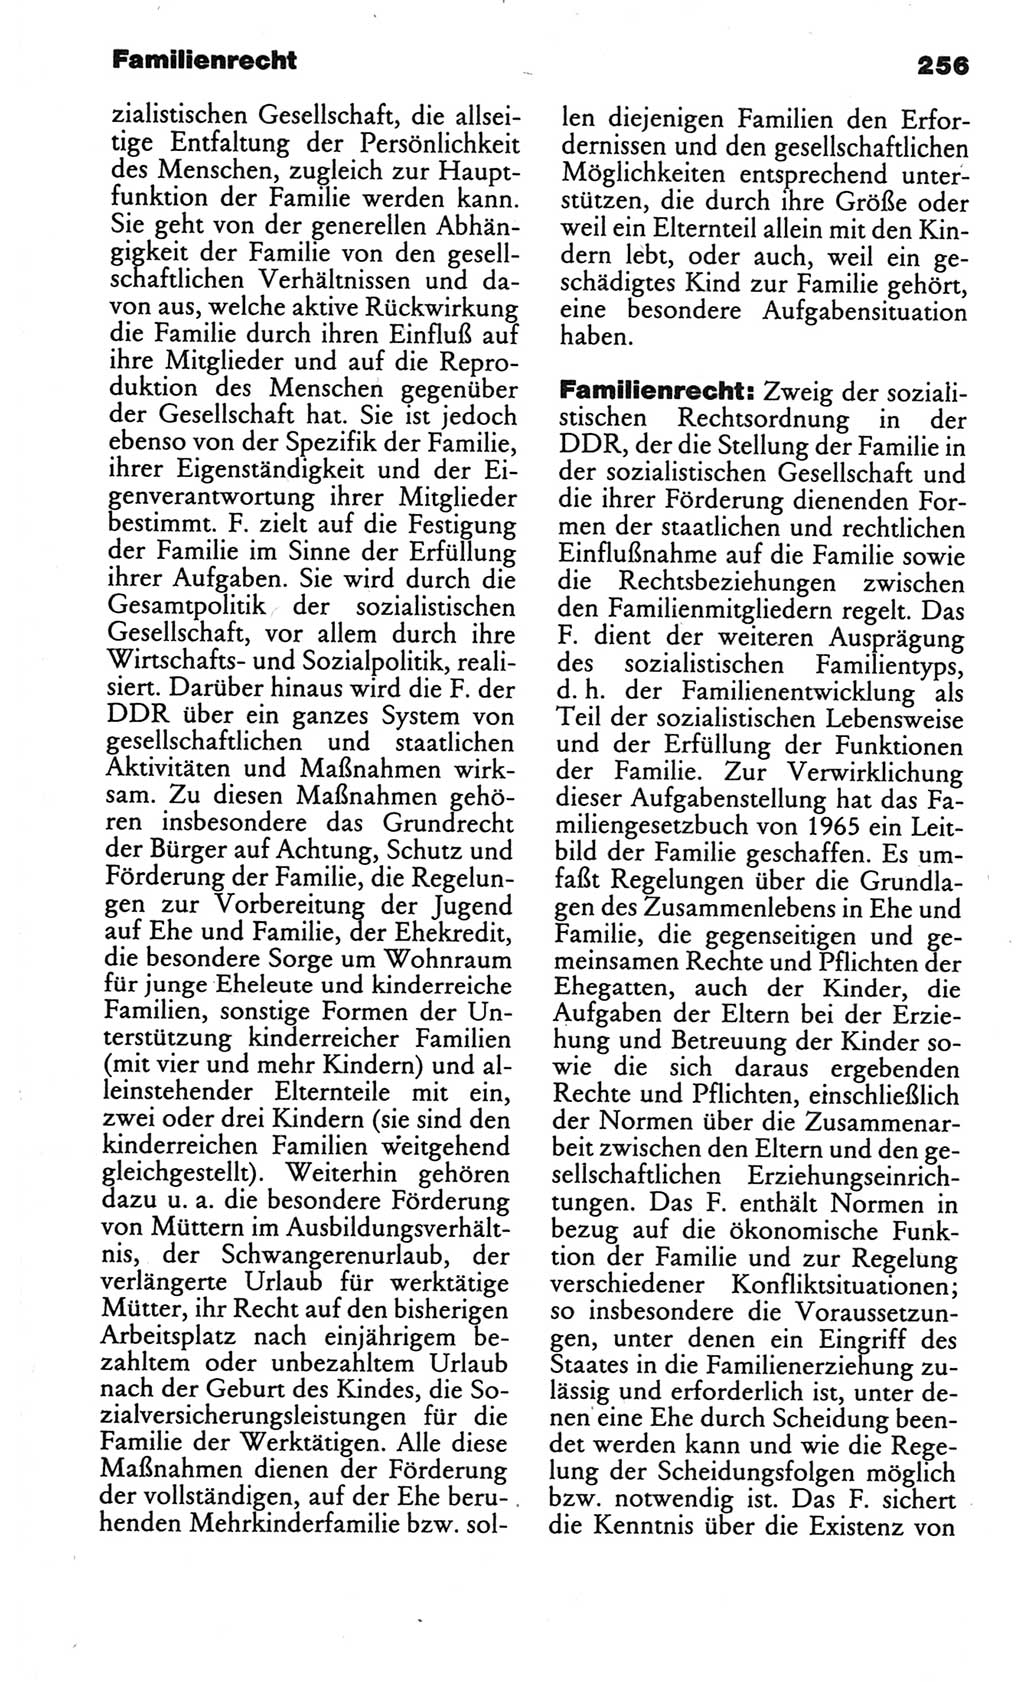 Kleines politisches Wörterbuch [Deutsche Demokratische Republik (DDR)] 1986, Seite 256 (Kl. pol. Wb. DDR 1986, S. 256)